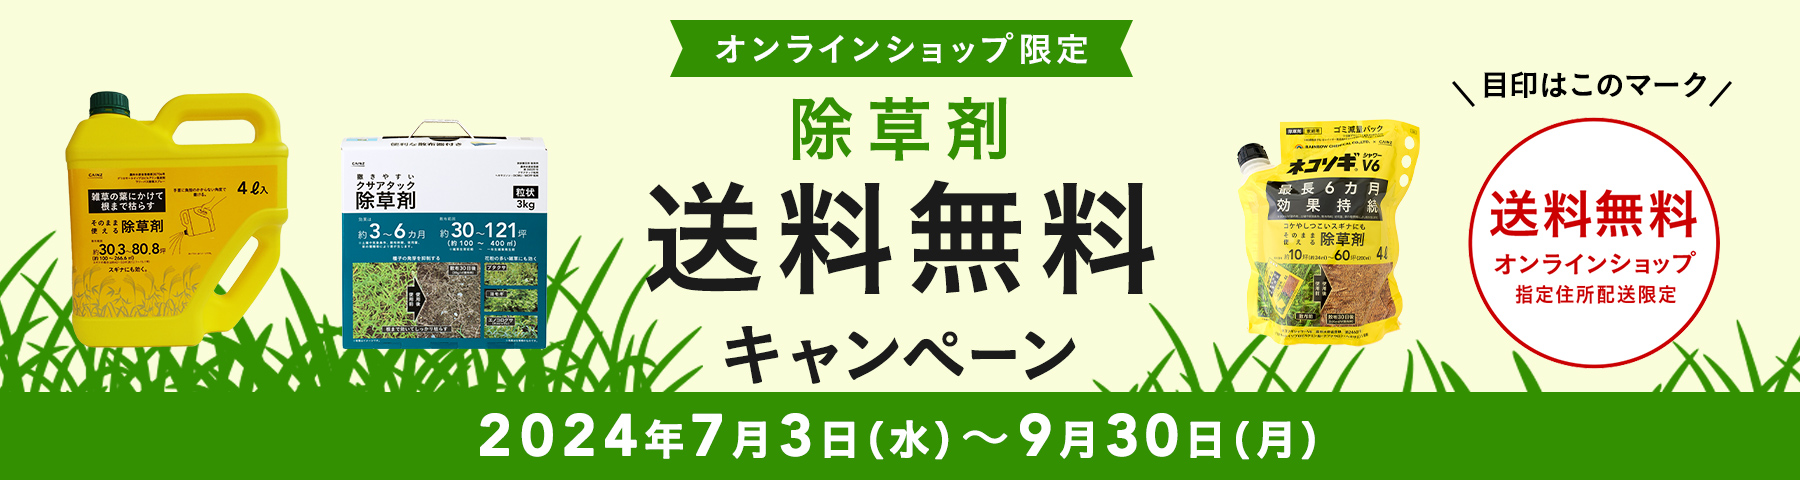 【オンラインショップ限定】除草剤 送料無料キャンペーン